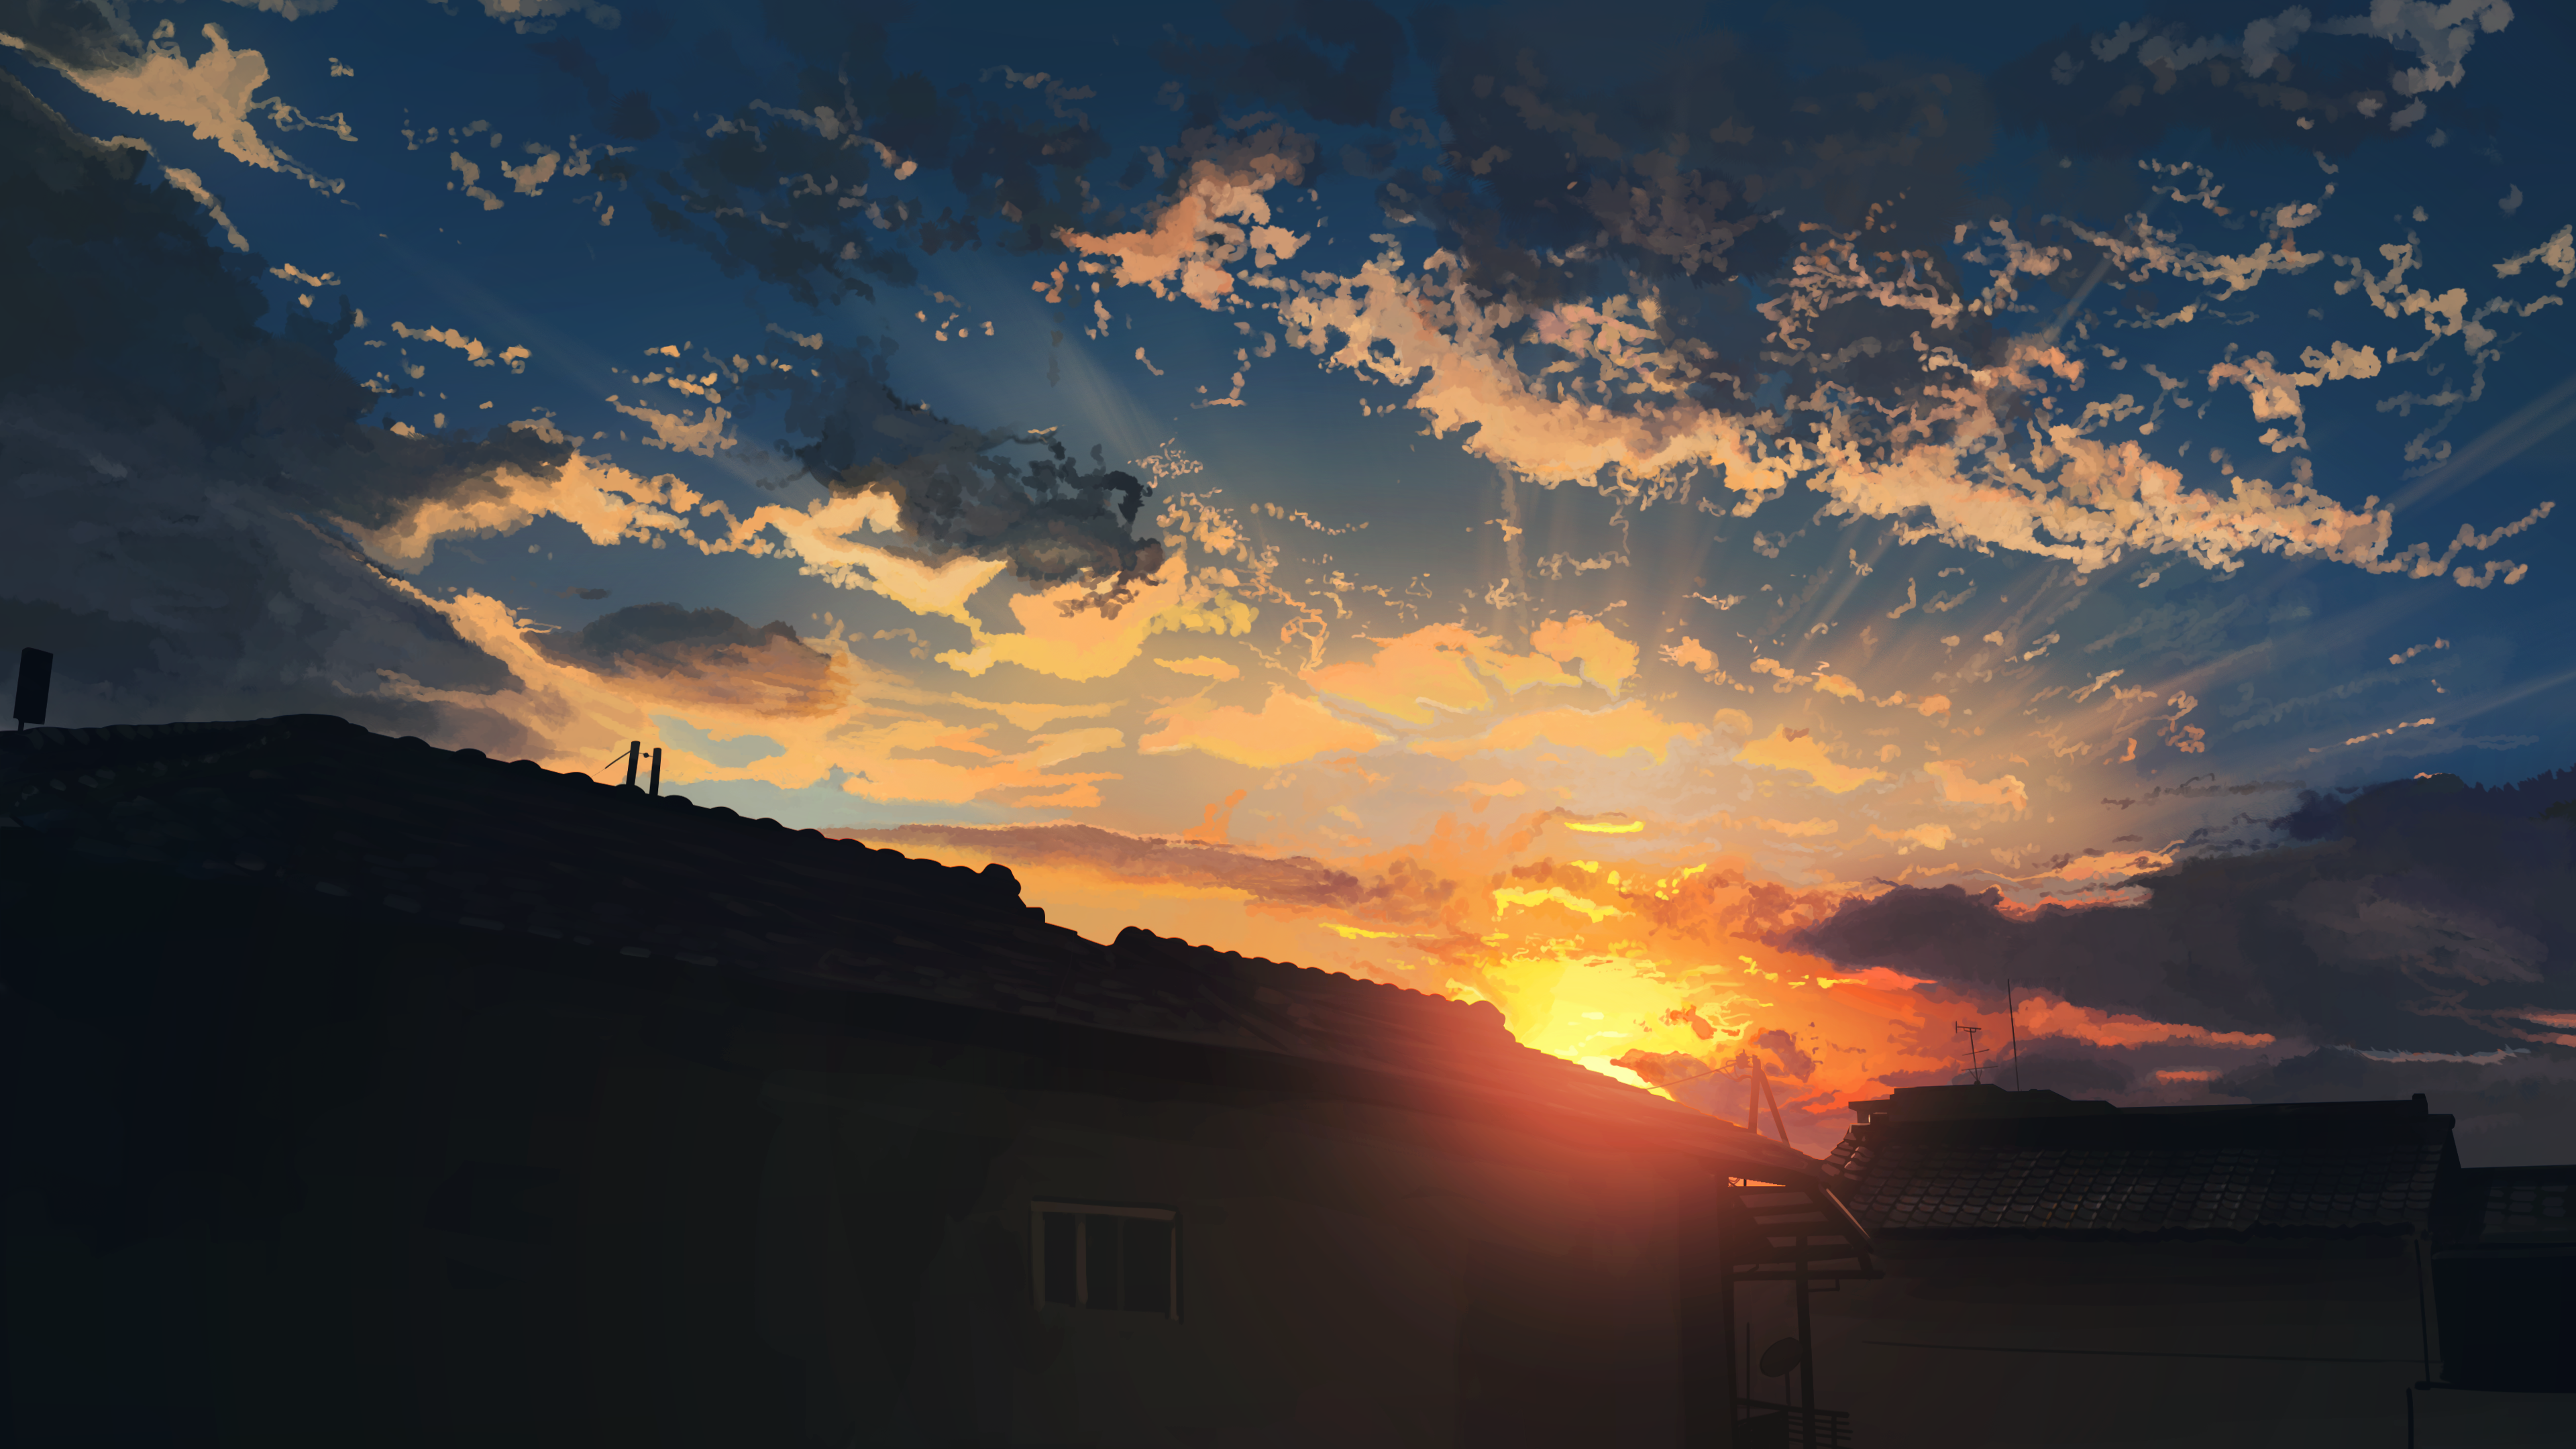 Dusk Anime City Sunset Wallpaper:3840x2160